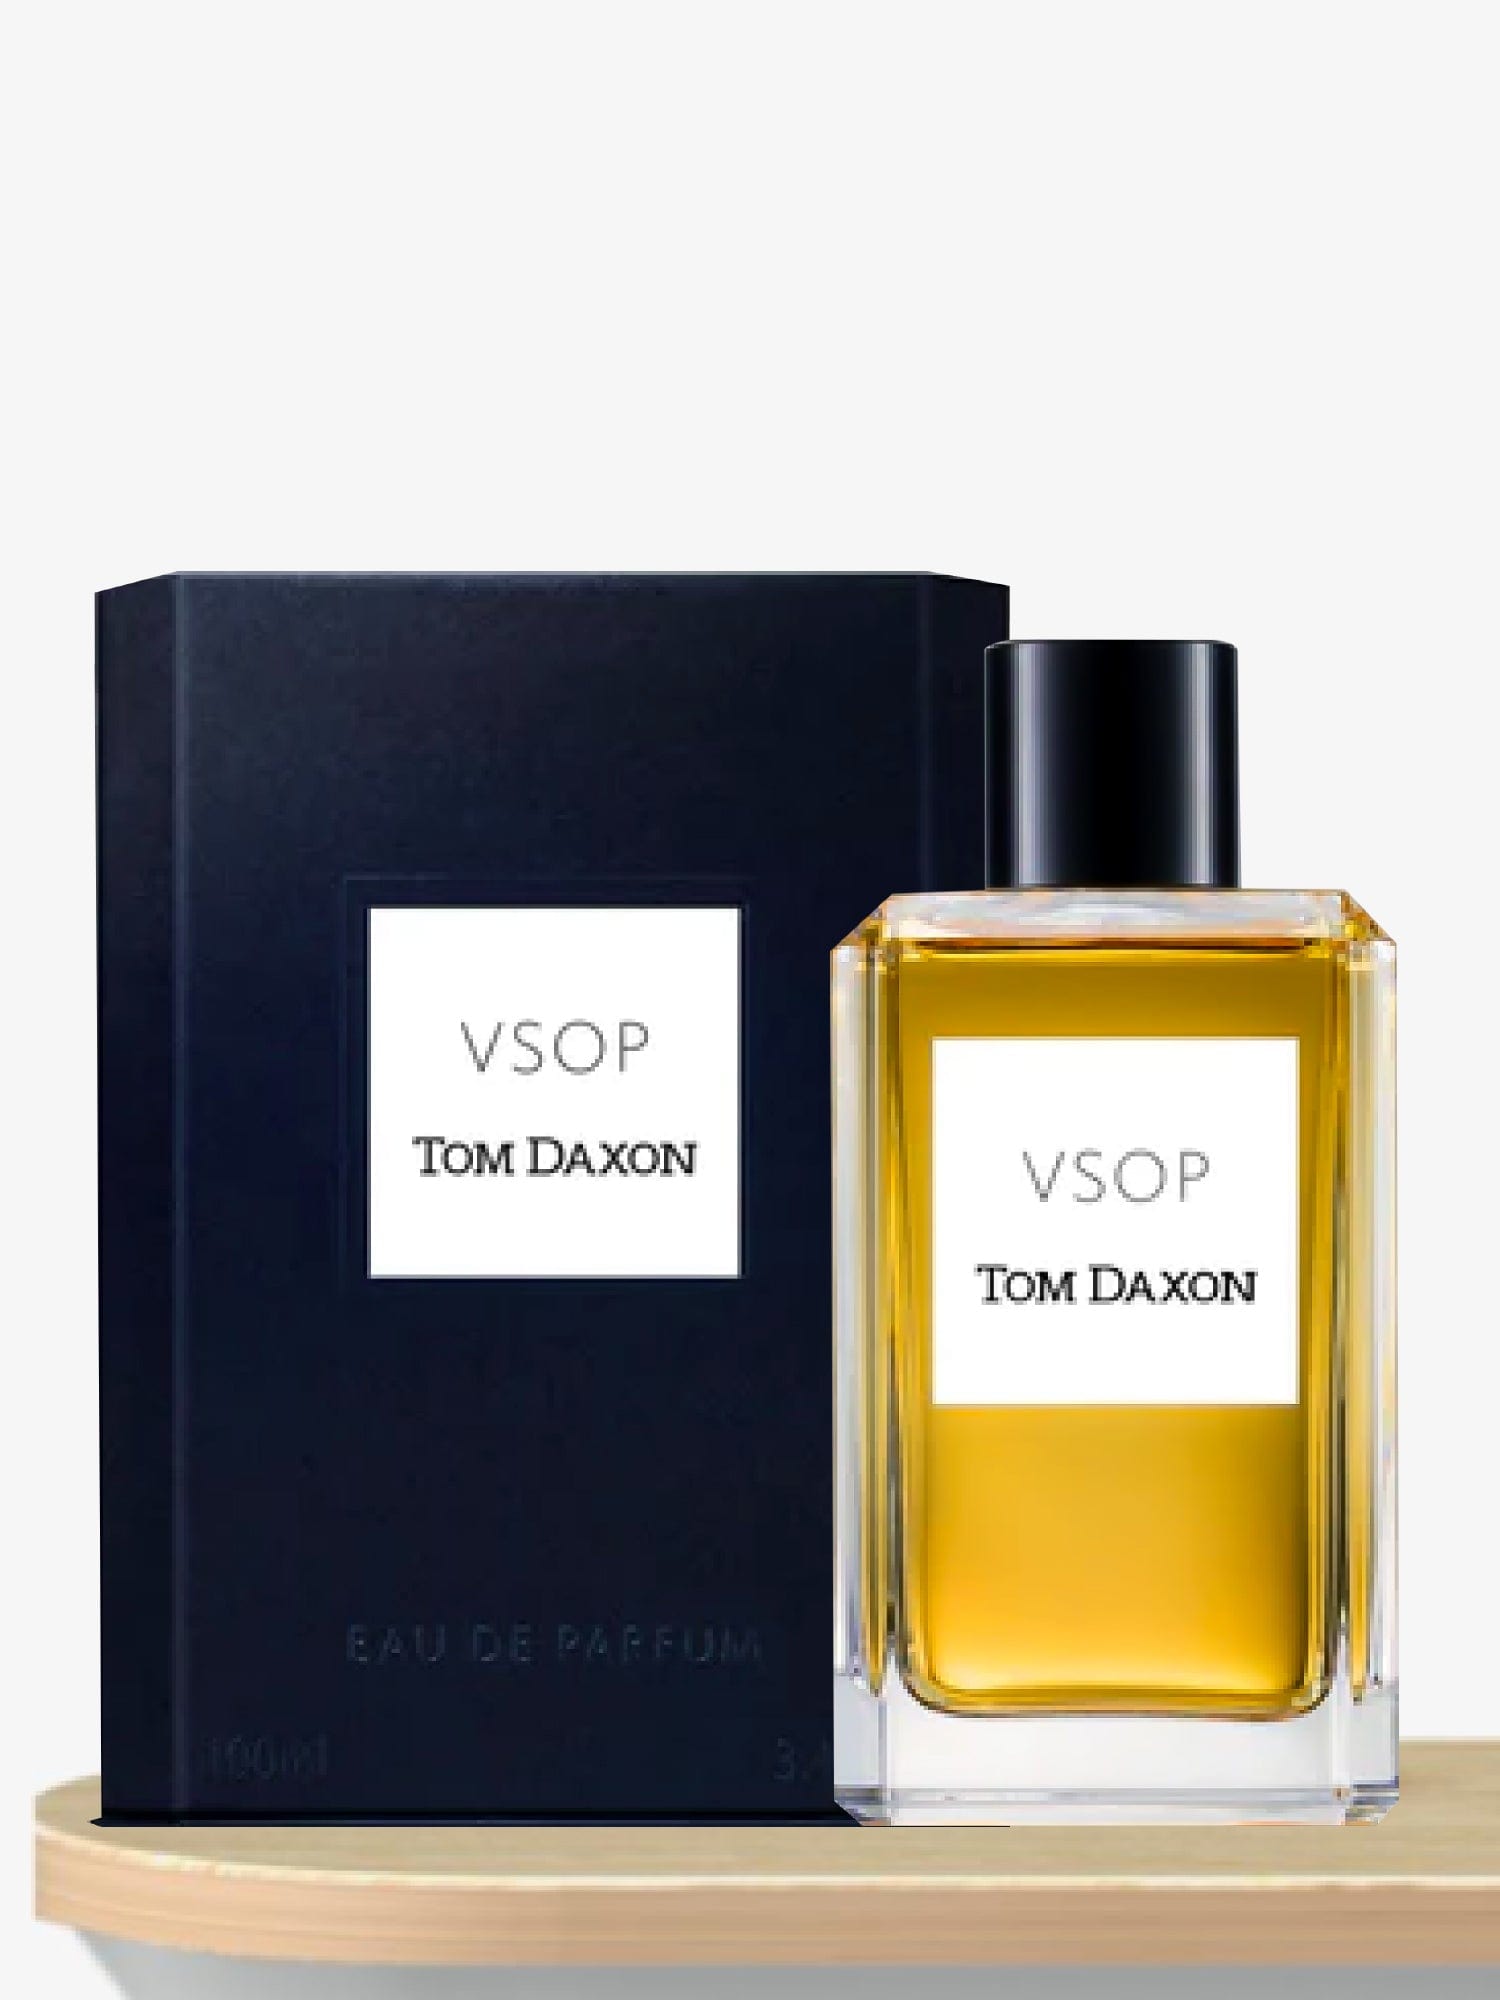 Tom Daxon Vsop Eau de Parfum 100 mL / Unisex